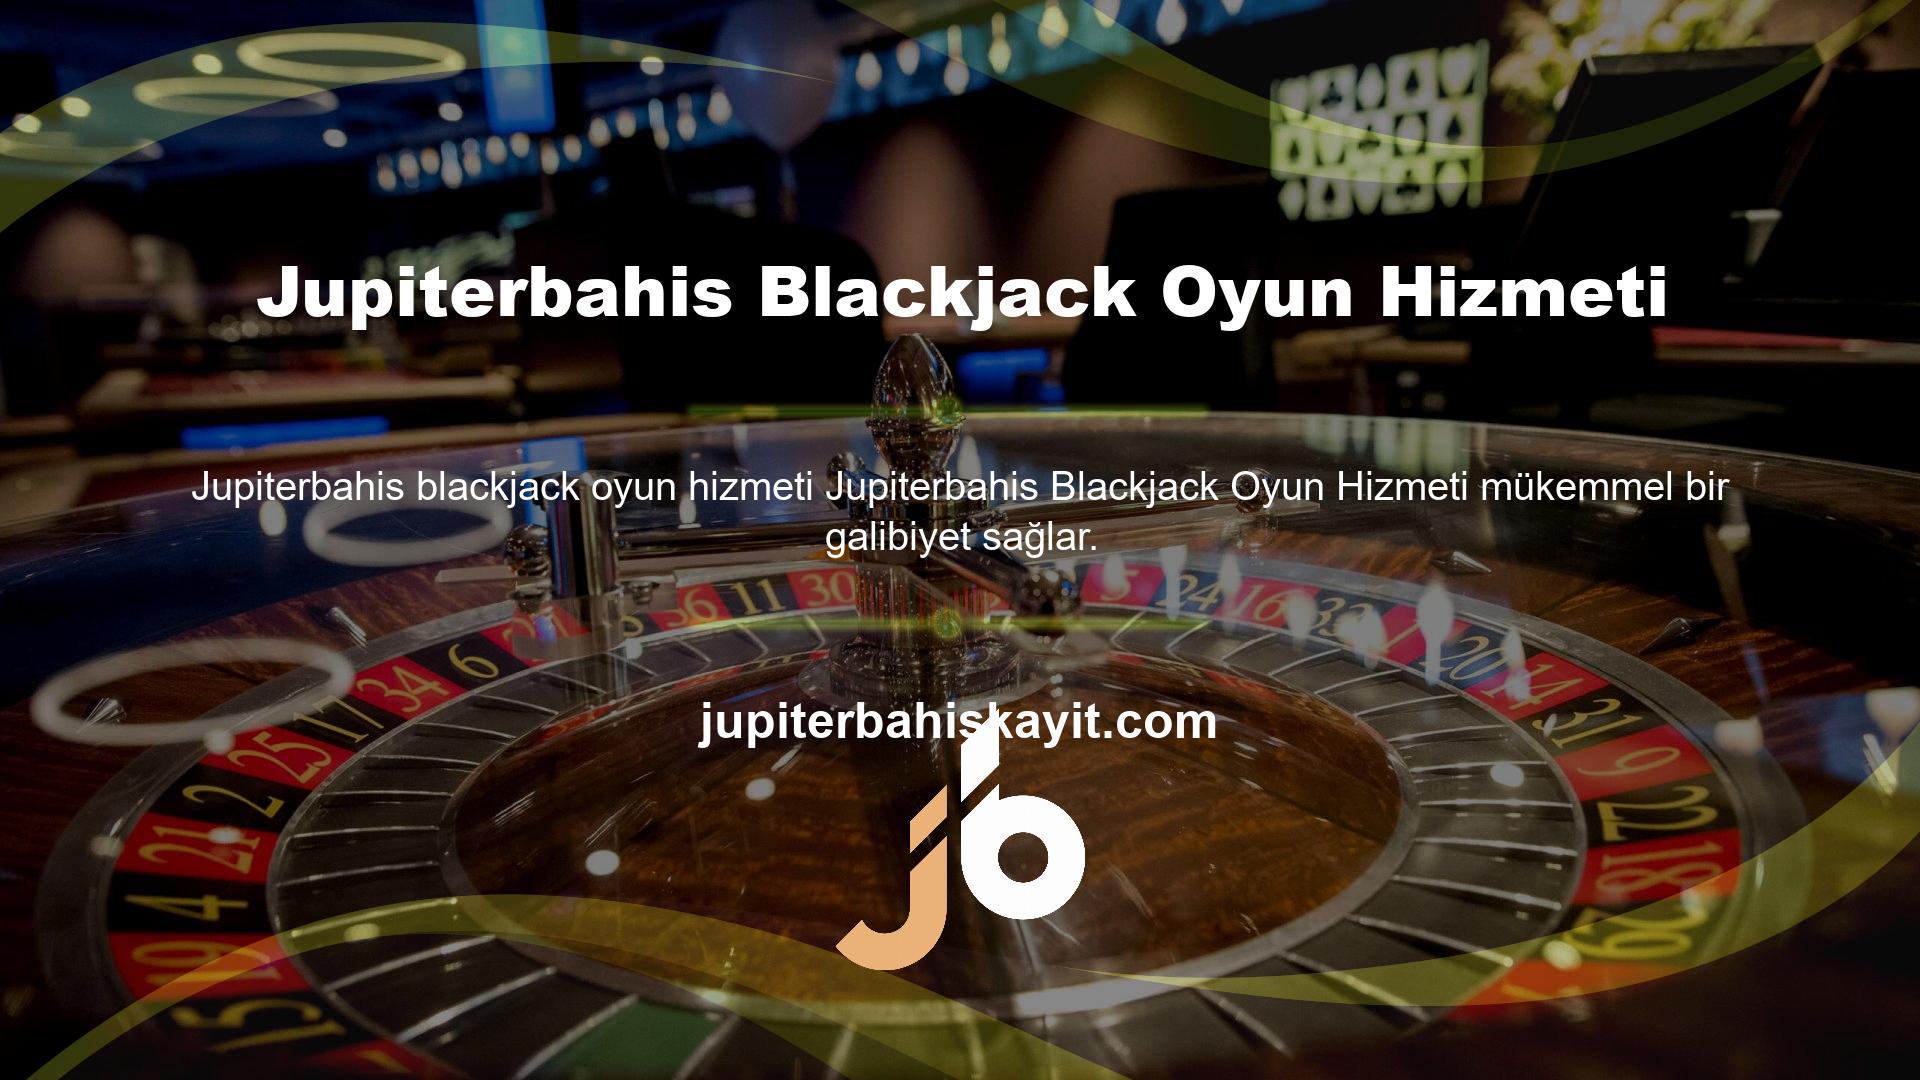 Online bahis platformuna tek tıkla giriş yapın ve blackjack'in kazandıran oyununa ortak olun